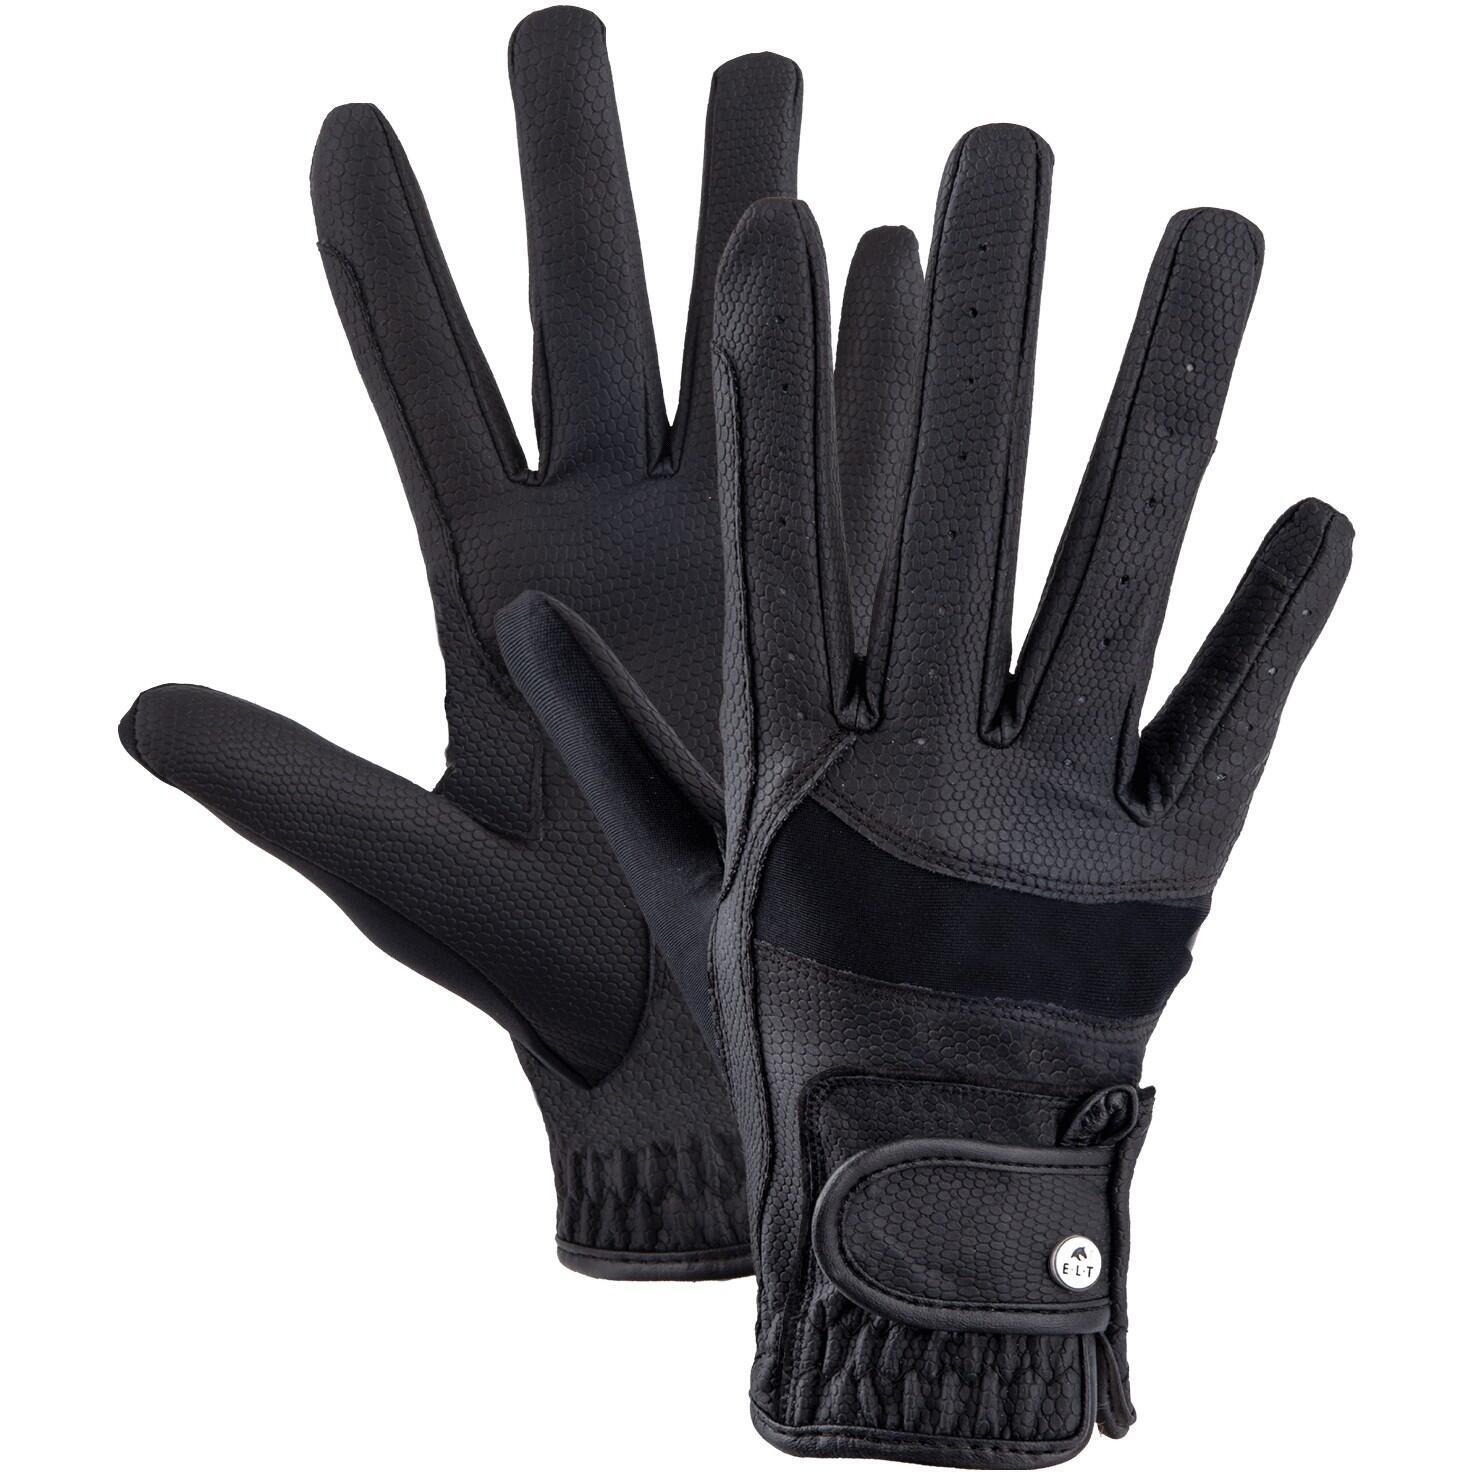 защитные противоскользящие перчатки для верховой езды Перчатки для верховой езды Magnetize Elt, черный